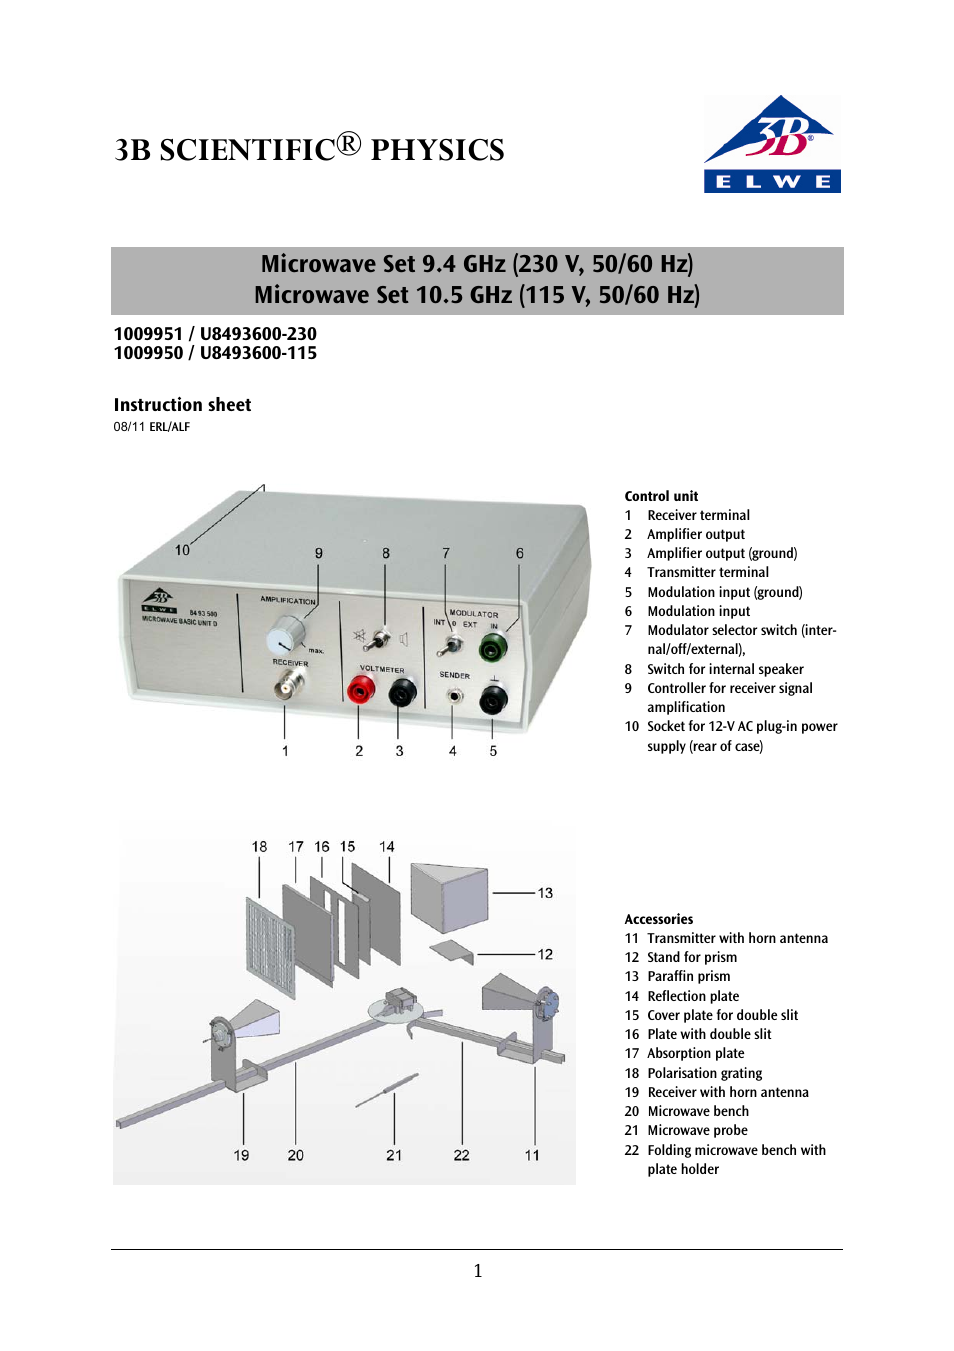 Microwave Set 9.4 GHz (230 V, 50__60 Hz)